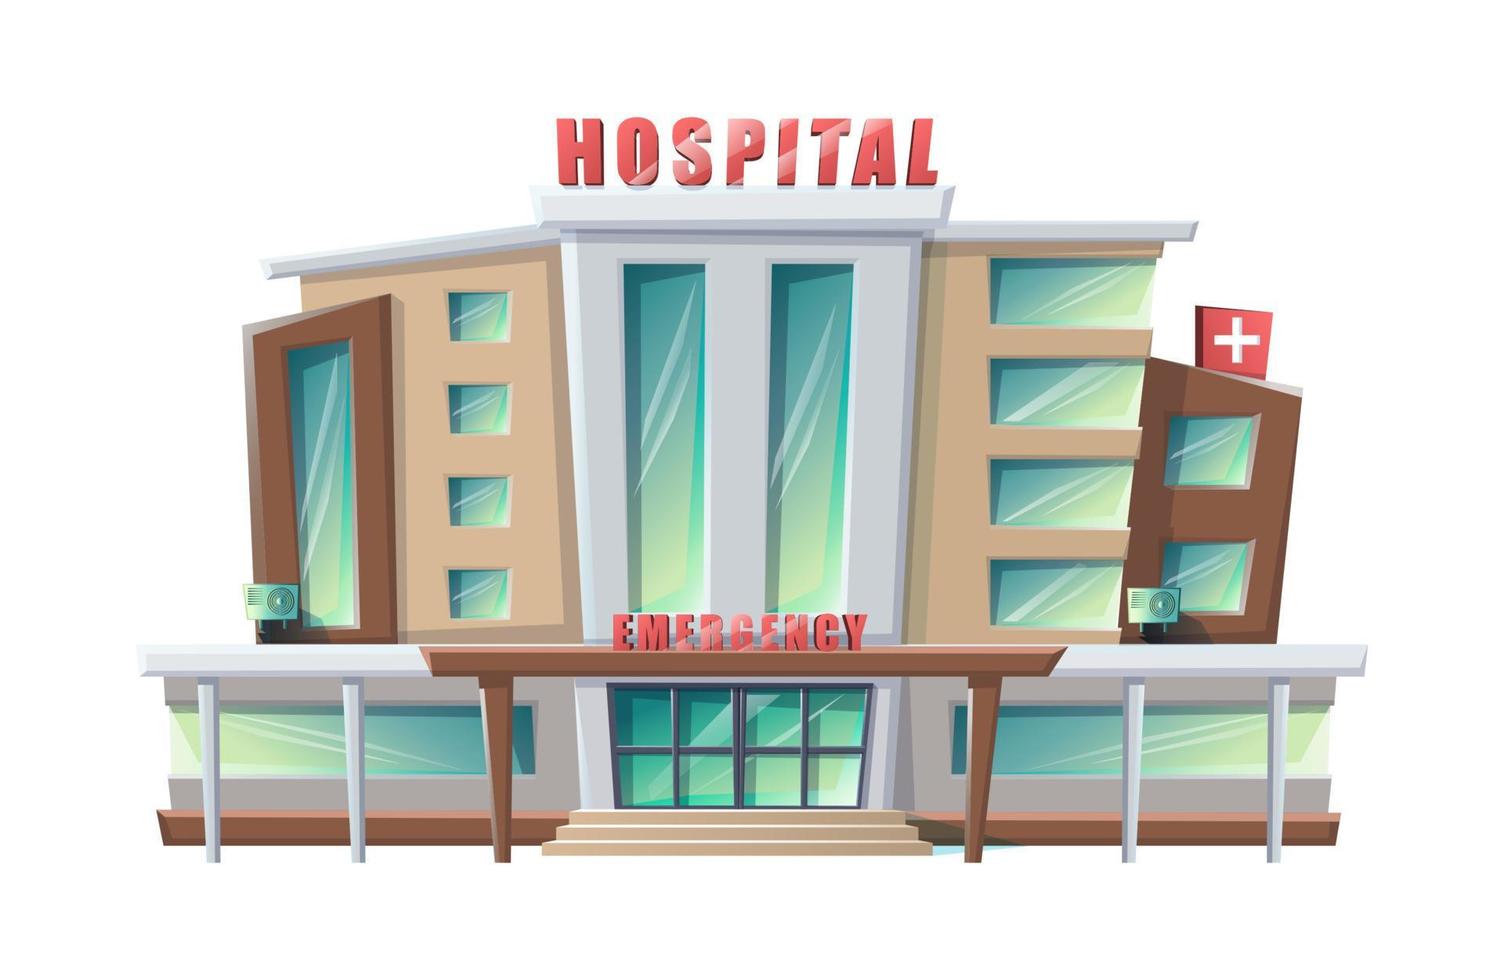 edificio ospedaliero in stile cartone animato vettoriale isolato su sfondo bianco.